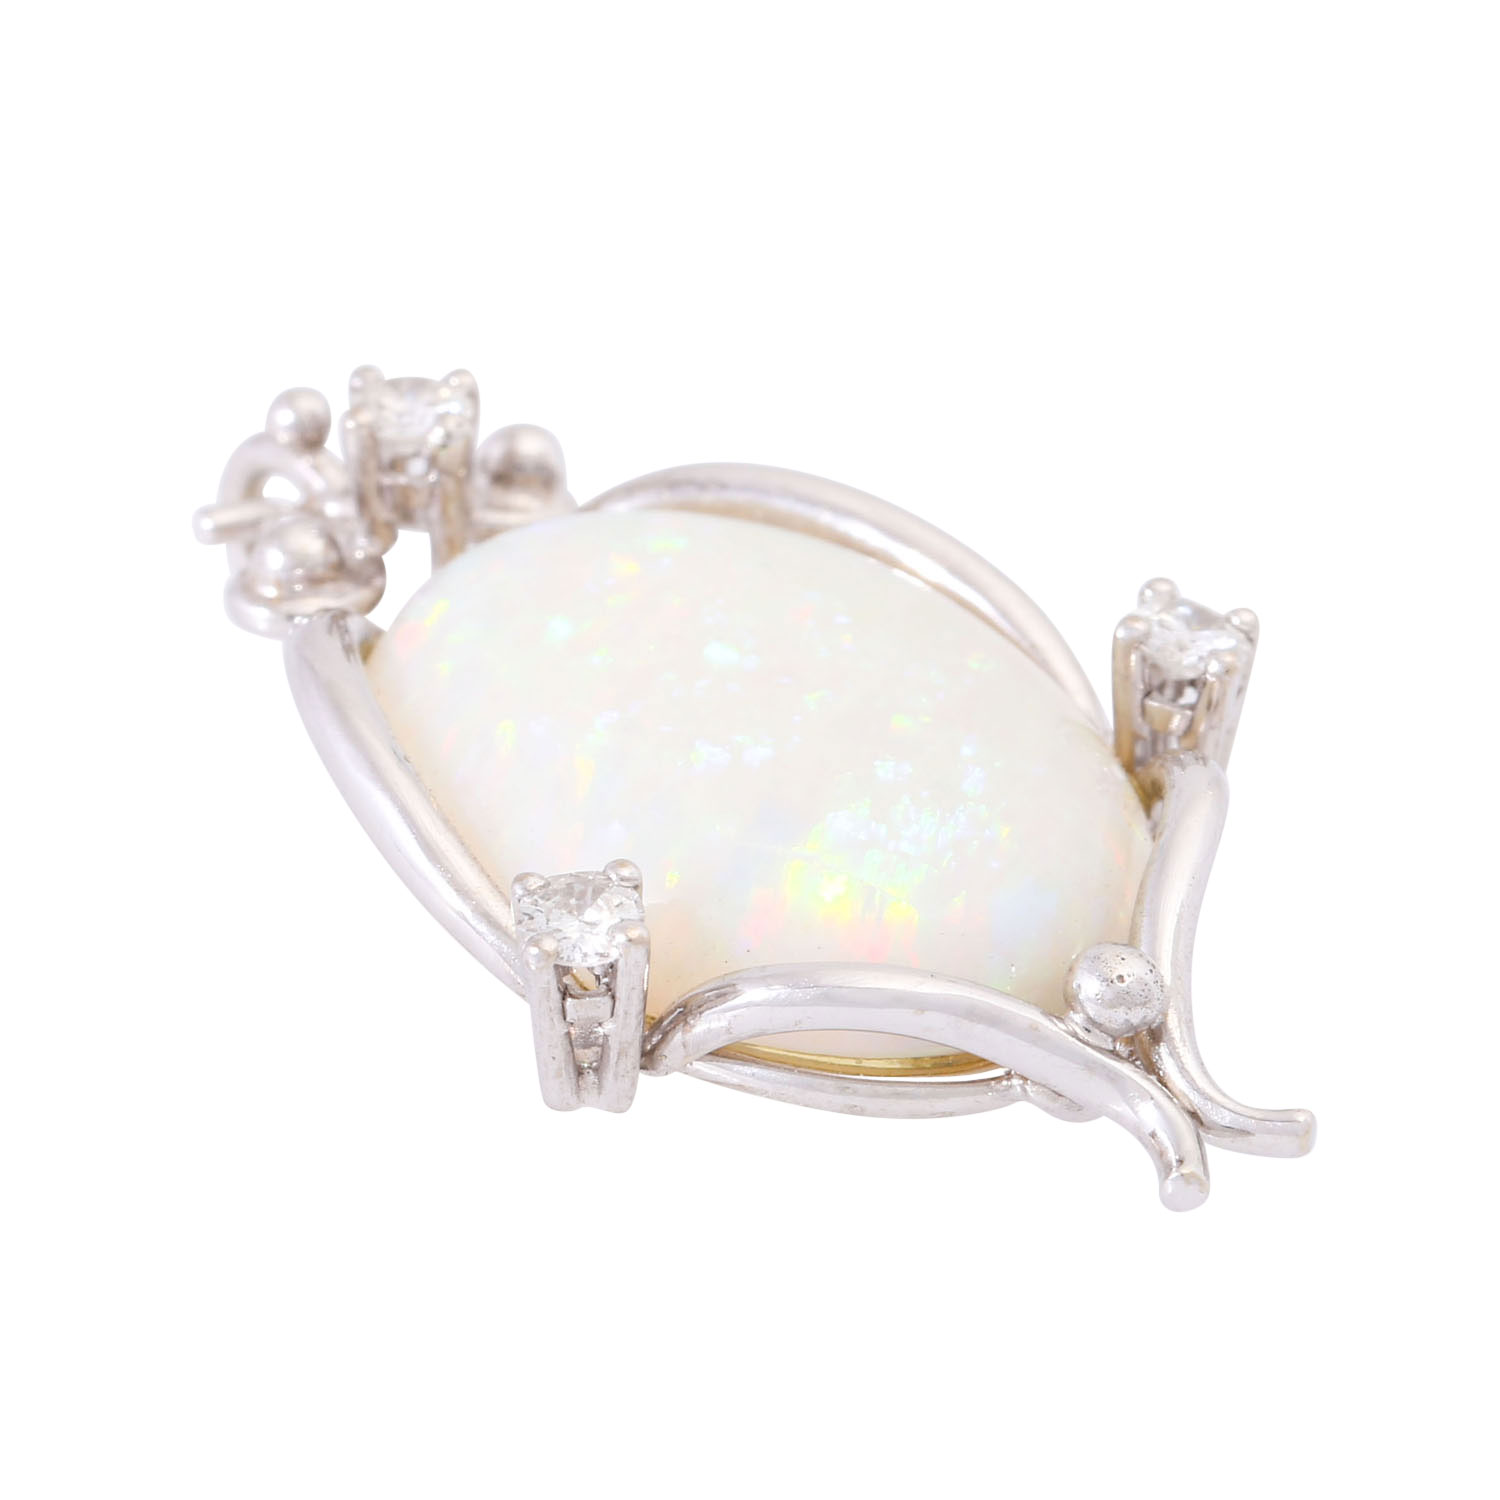 Anhänger mit weißem Opal und Brillanten zus. ca. 0,15 ct (punziert), - Image 4 of 4